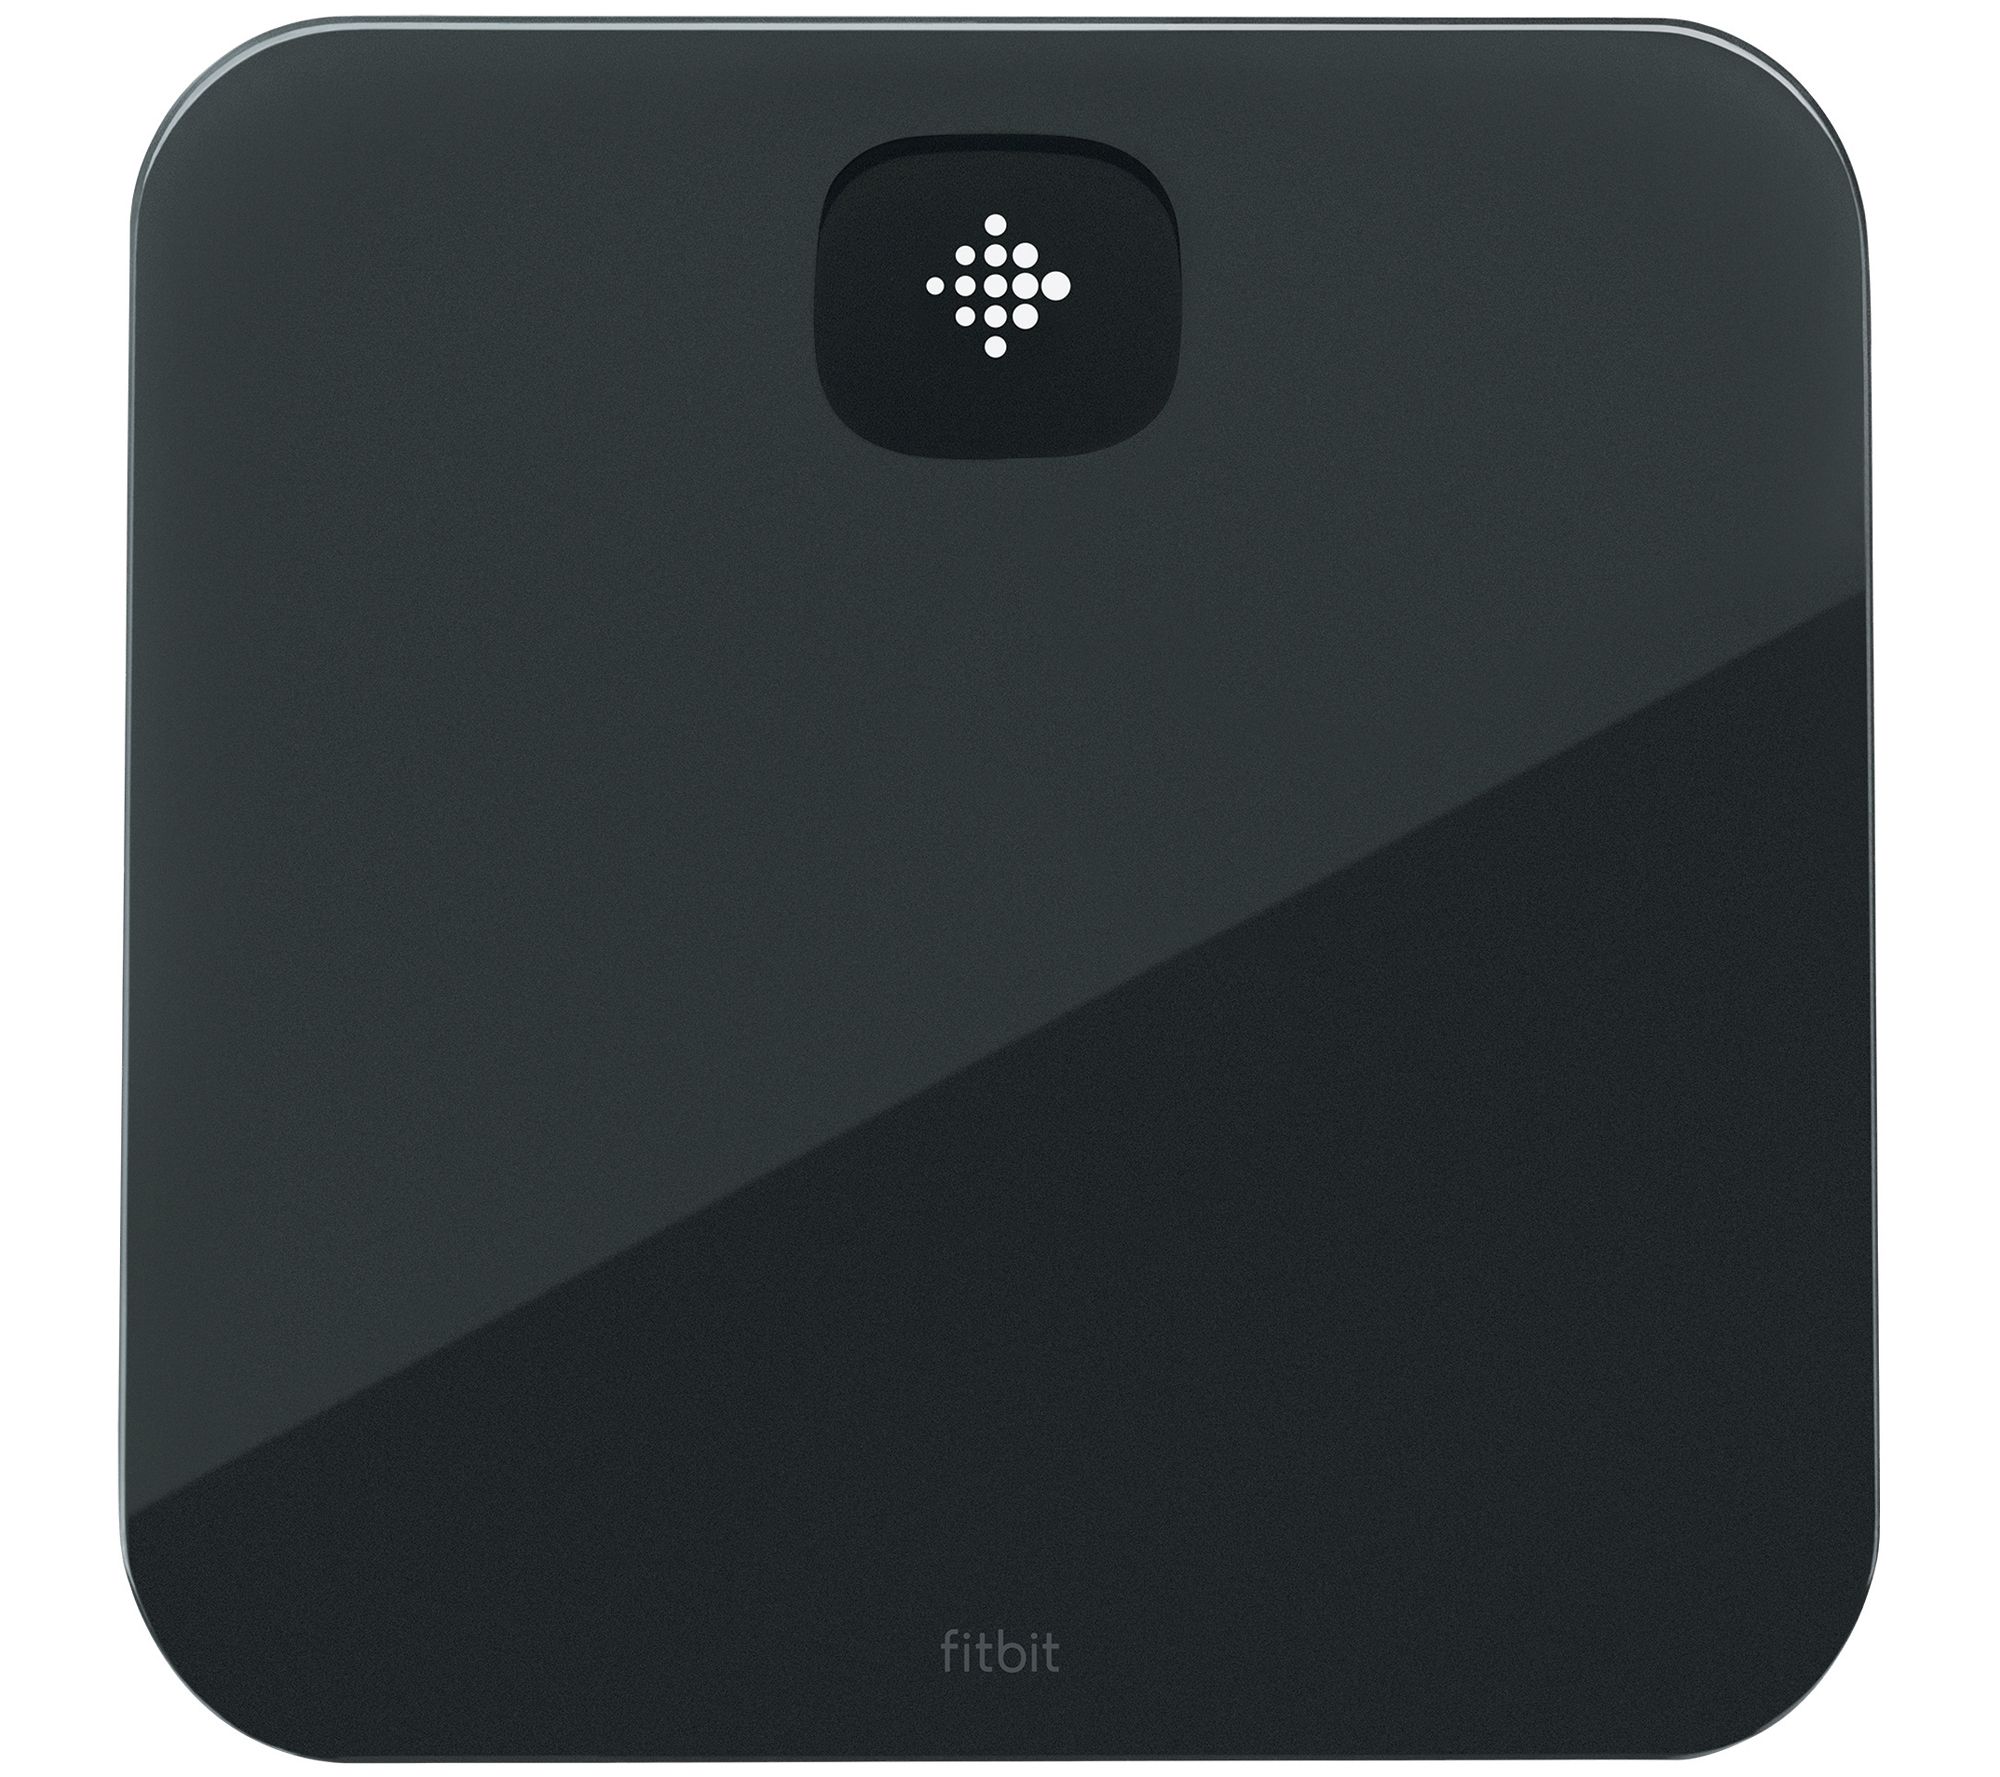 Fitbit Aria Air Smart Scale Bluetooth Black